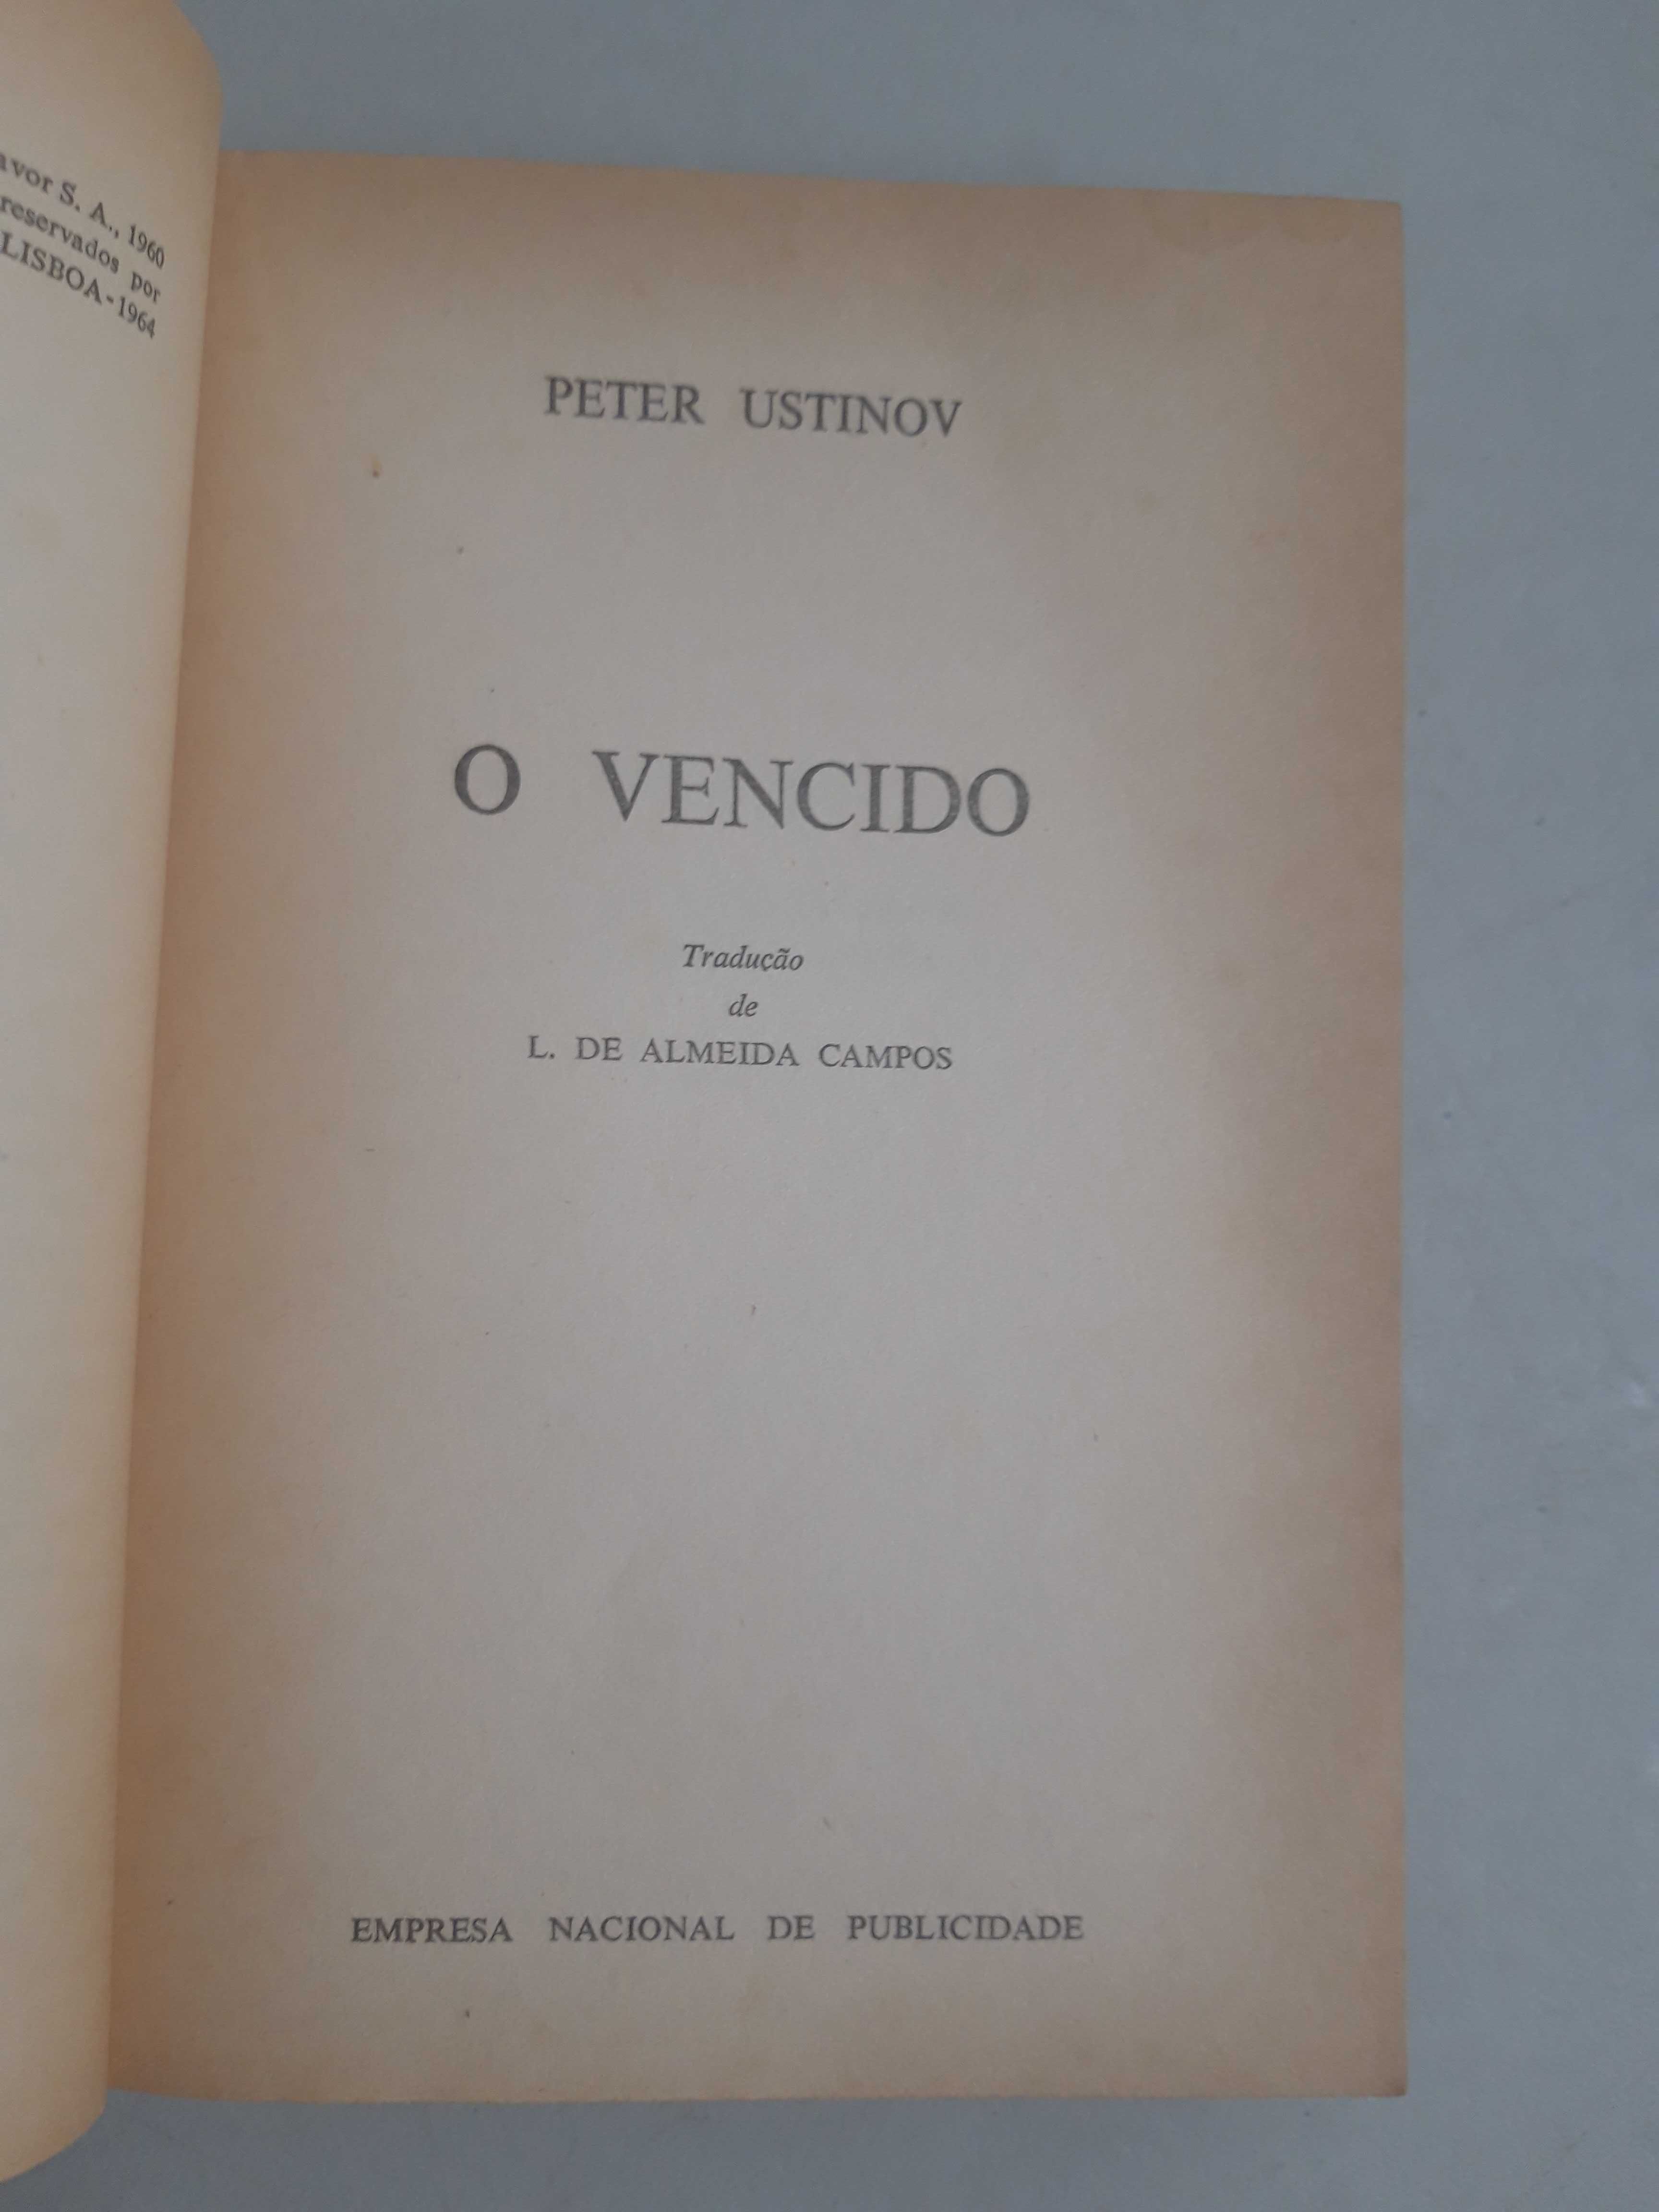 Livro PA-1 - Petr Ustinov - O Vencido